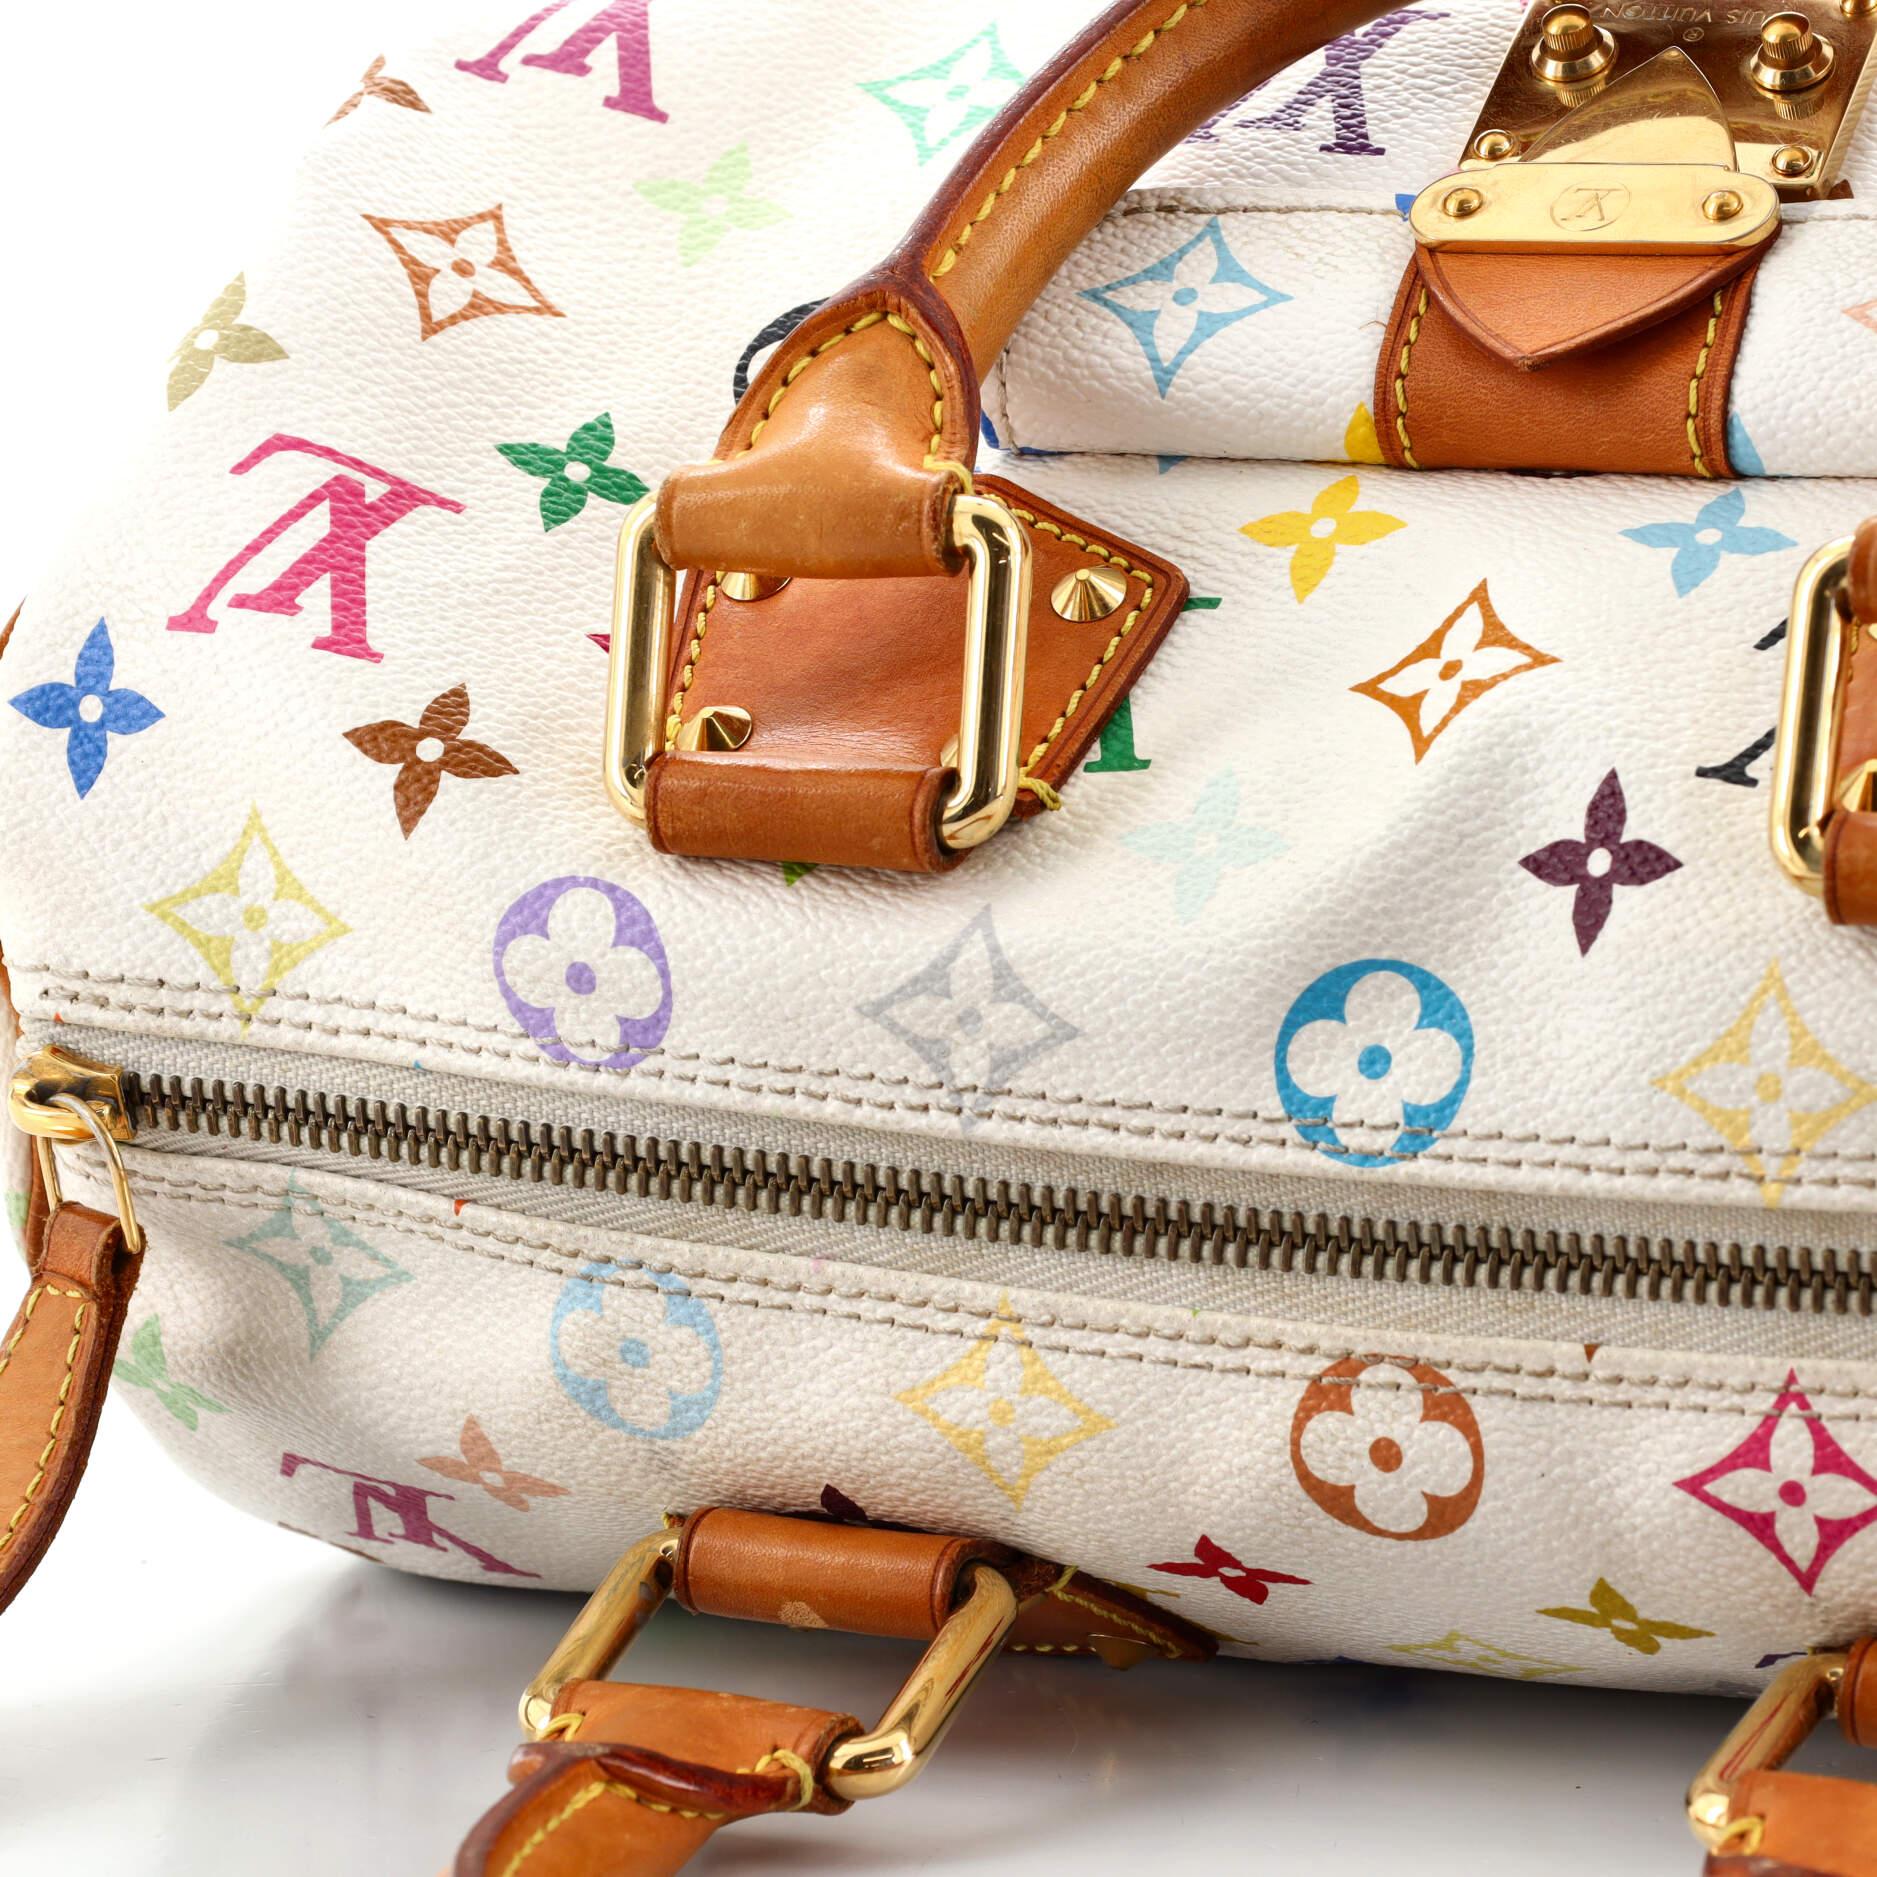 Louis Vuitton Speedy Handbag Monogram Multicolor 30 4